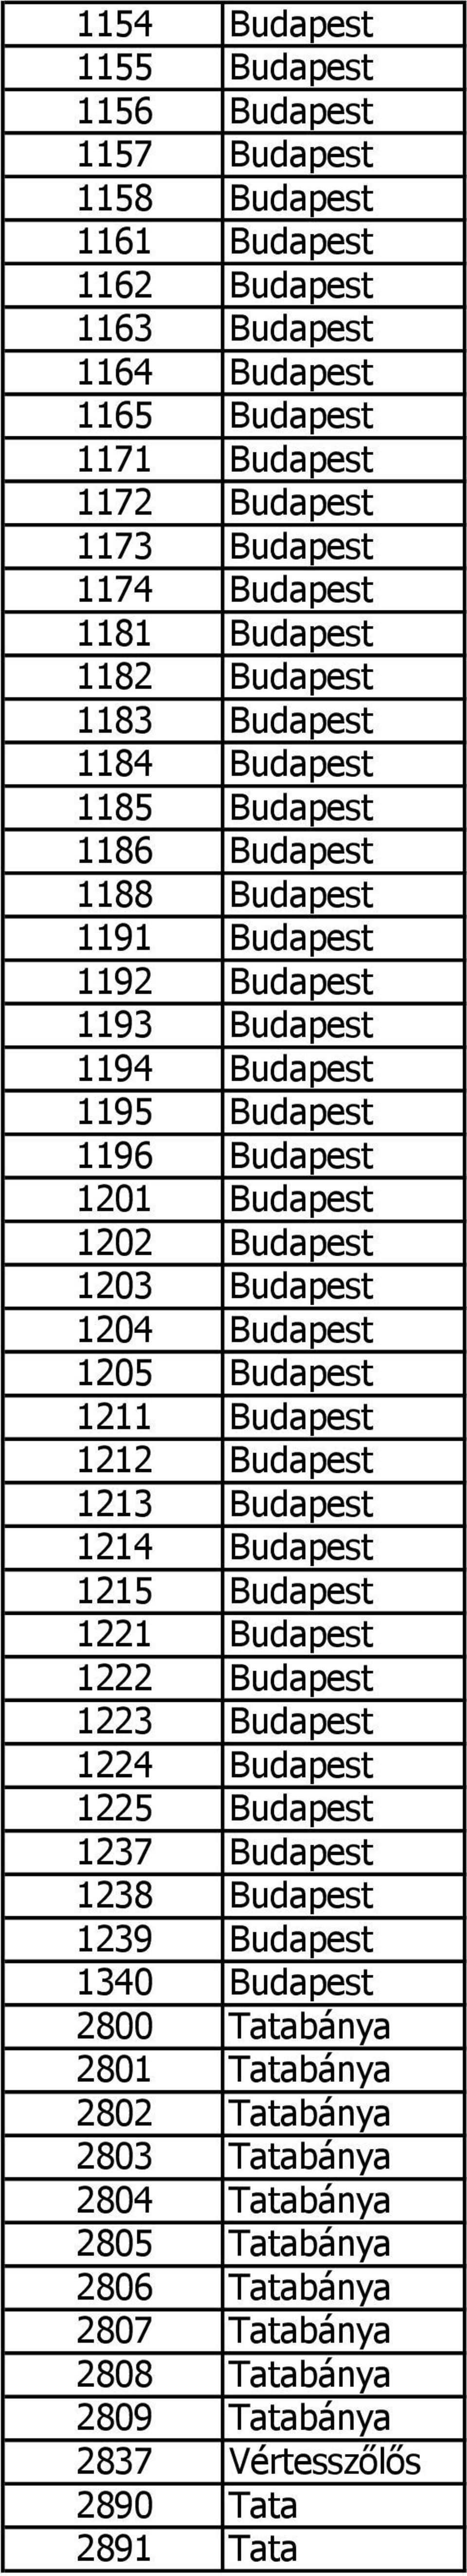 1202 Budapest 1203 Budapest 1204 Budapest 1205 Budapest 1211 Budapest 1212 Budapest 1213 Budapest 1214 Budapest 1215 Budapest 1221 Budapest 1222 Budapest 1223 Budapest 1224 Budapest 1225 Budapest